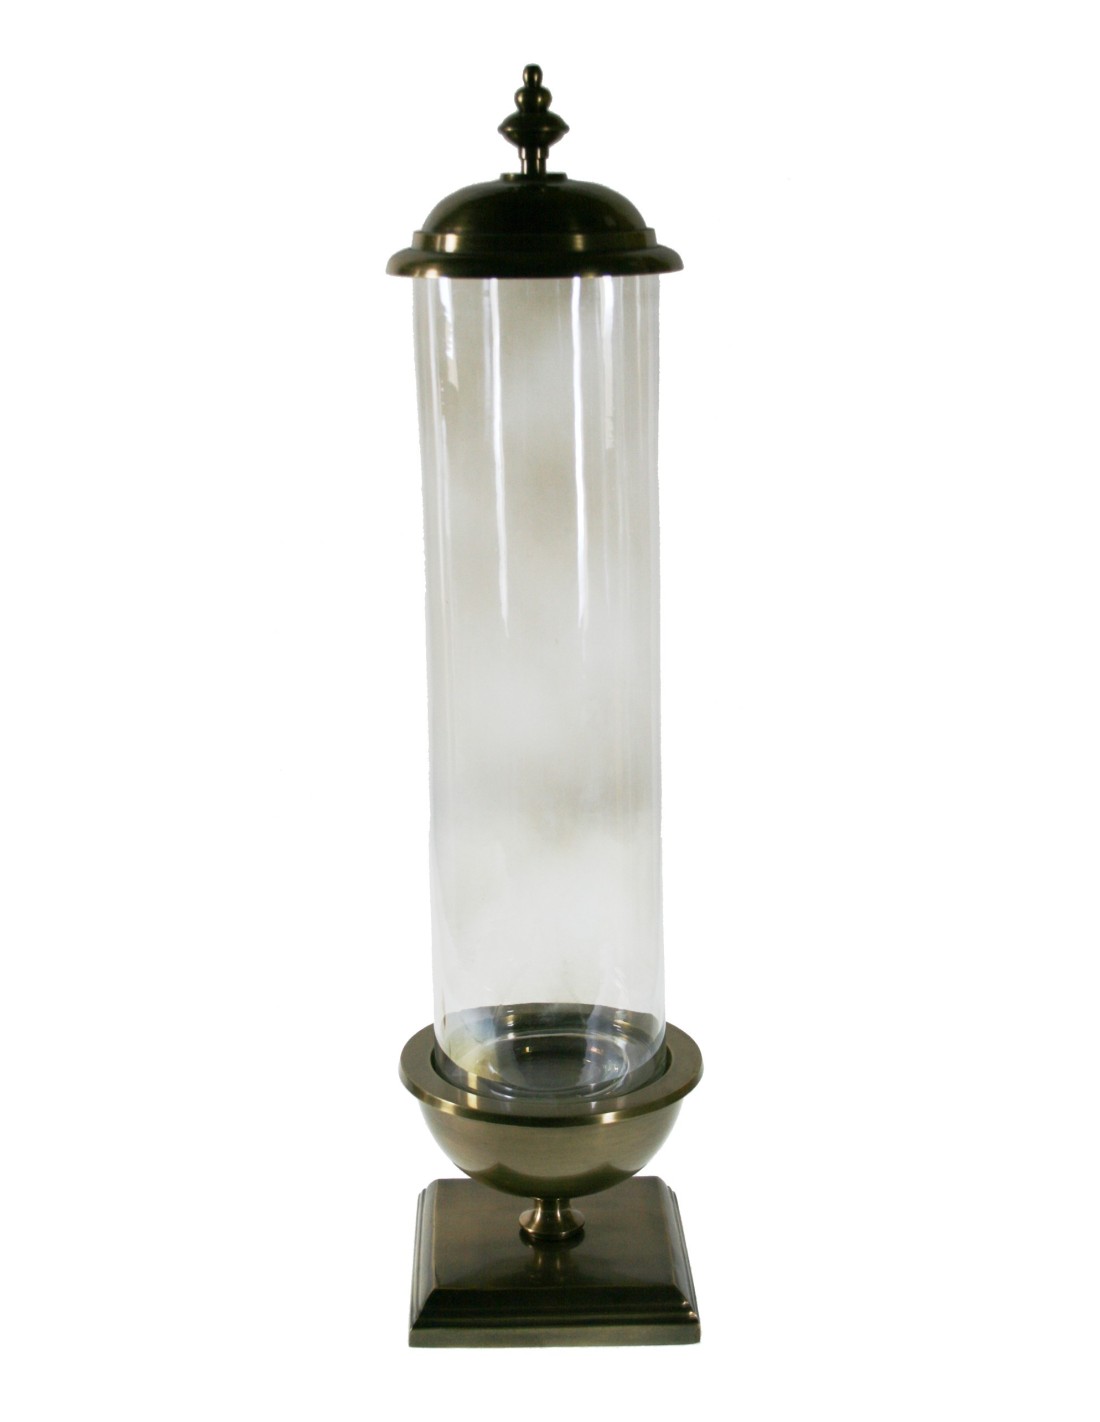 Urna hurricane de cristal con base de metal y tapa superior para decoración y ambiente hogar de estilo clásico.